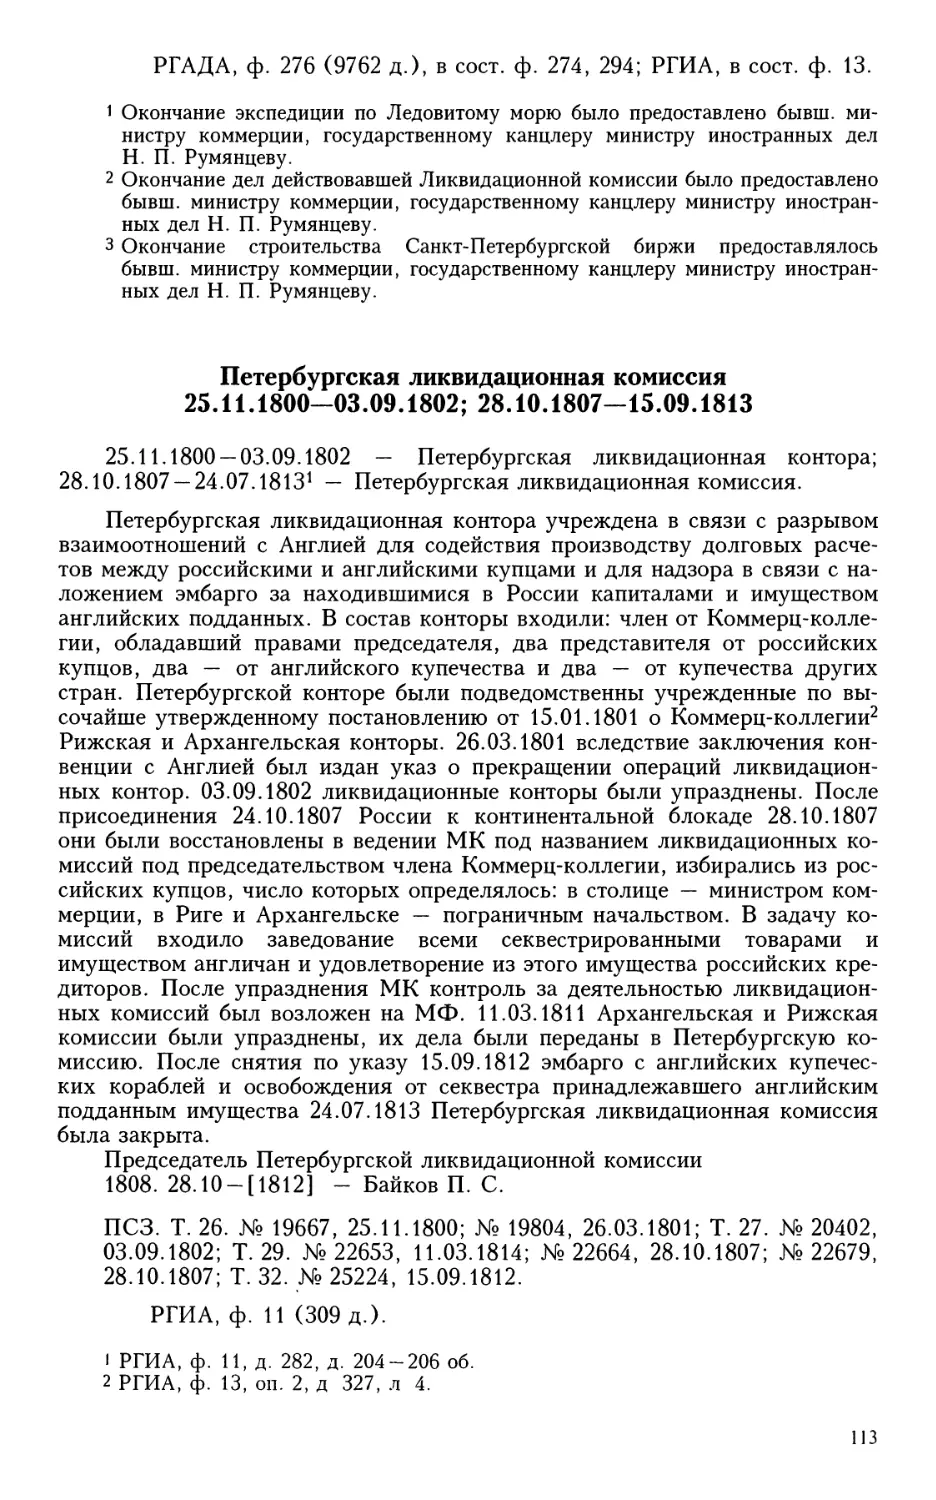 Петербургская ликвидационная комиссия